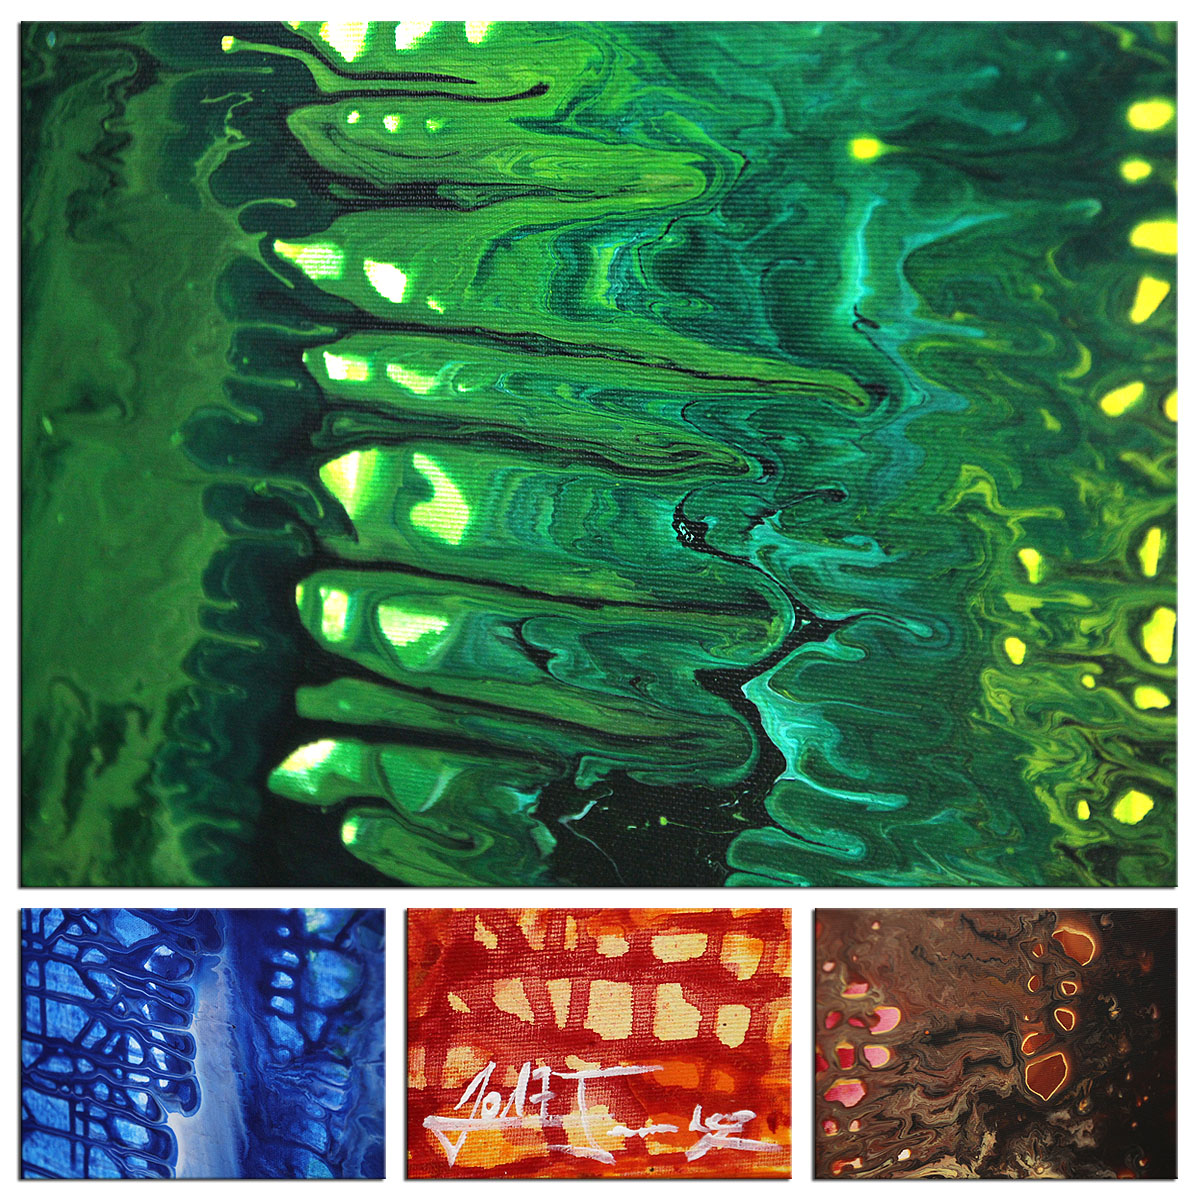 Acrylbilder, J. Fernandez: "Liquid Colors V" (E)